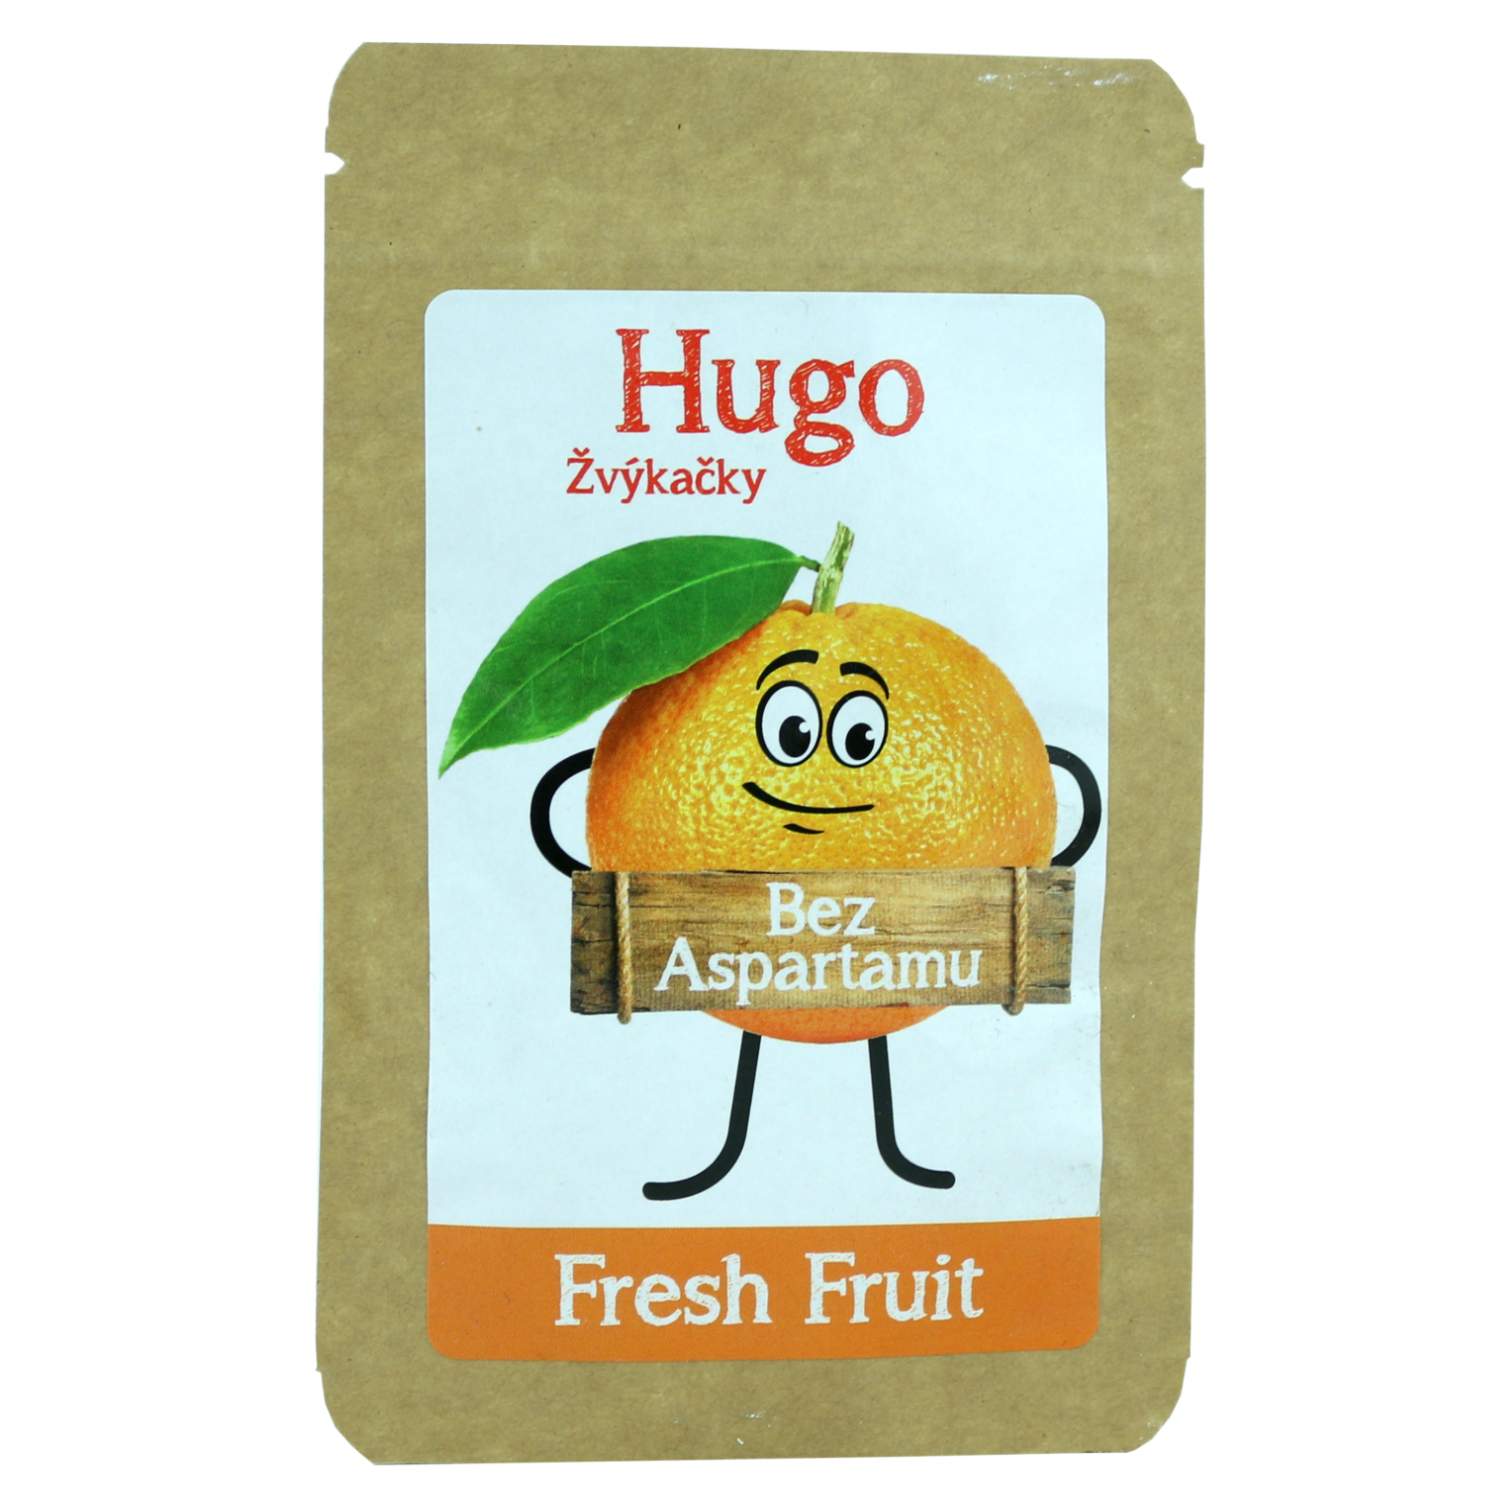 Hugo žuvačky - ovocie (9g, 45g)